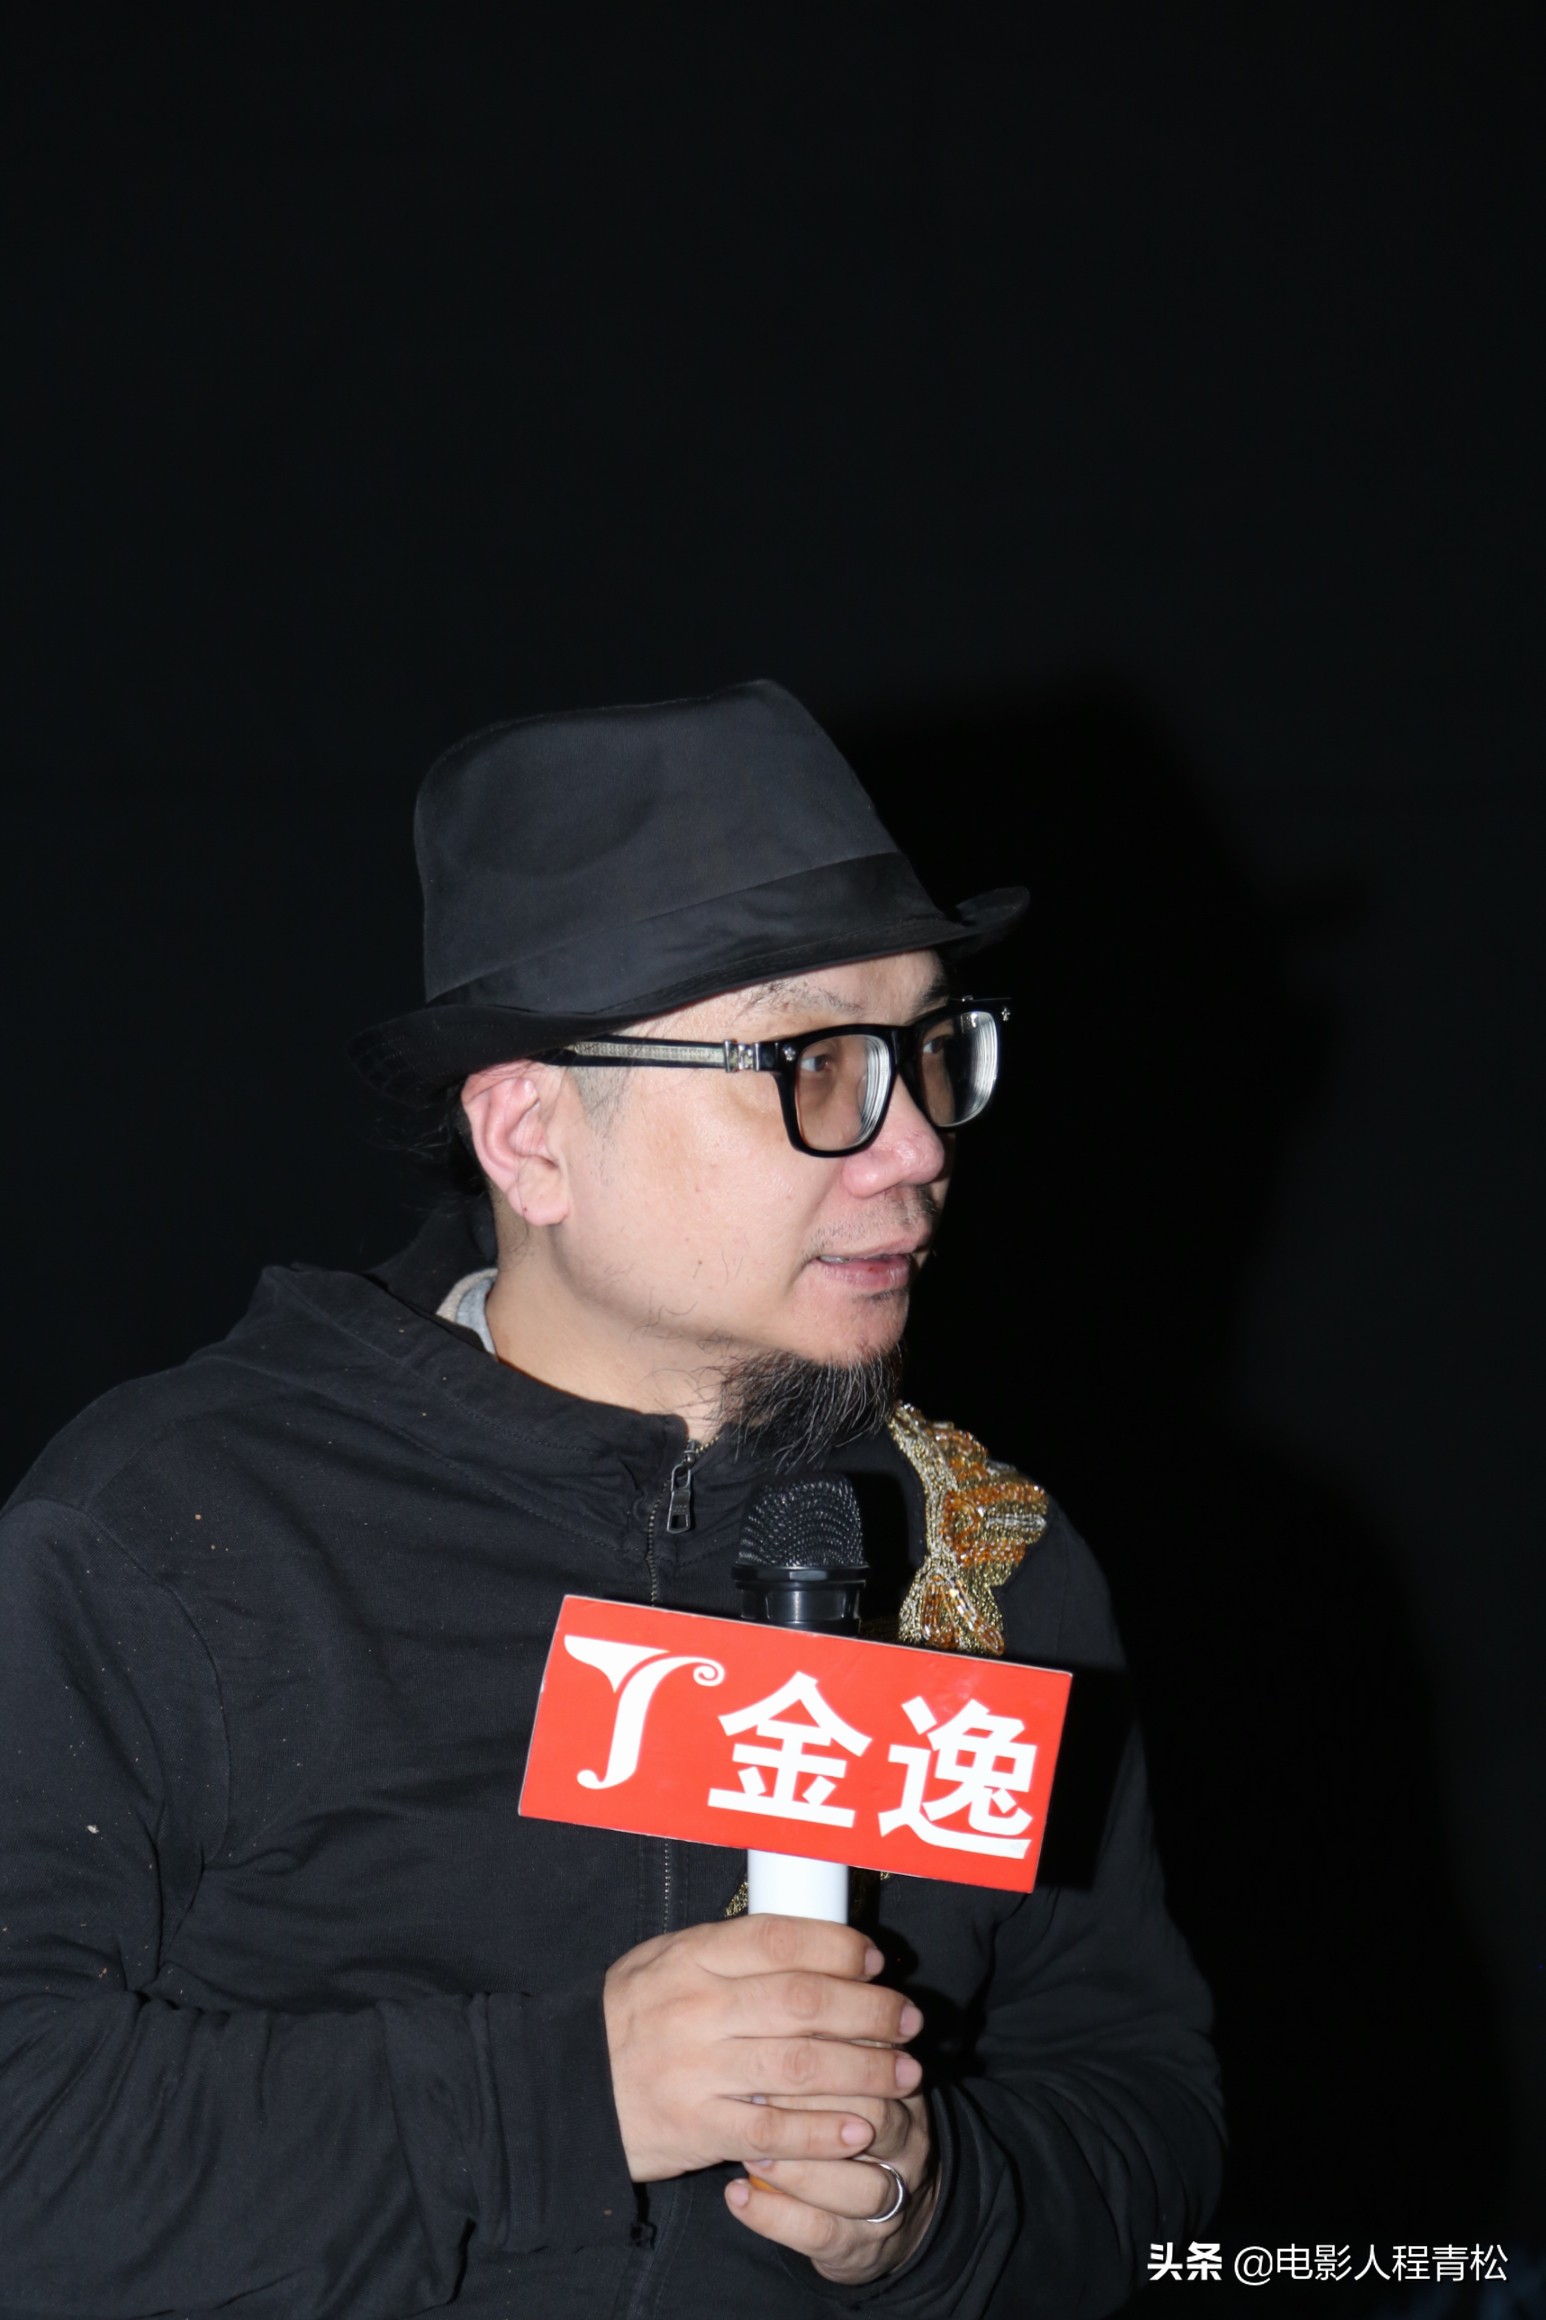 电影《恋恋不舍》在北京举行观影活动